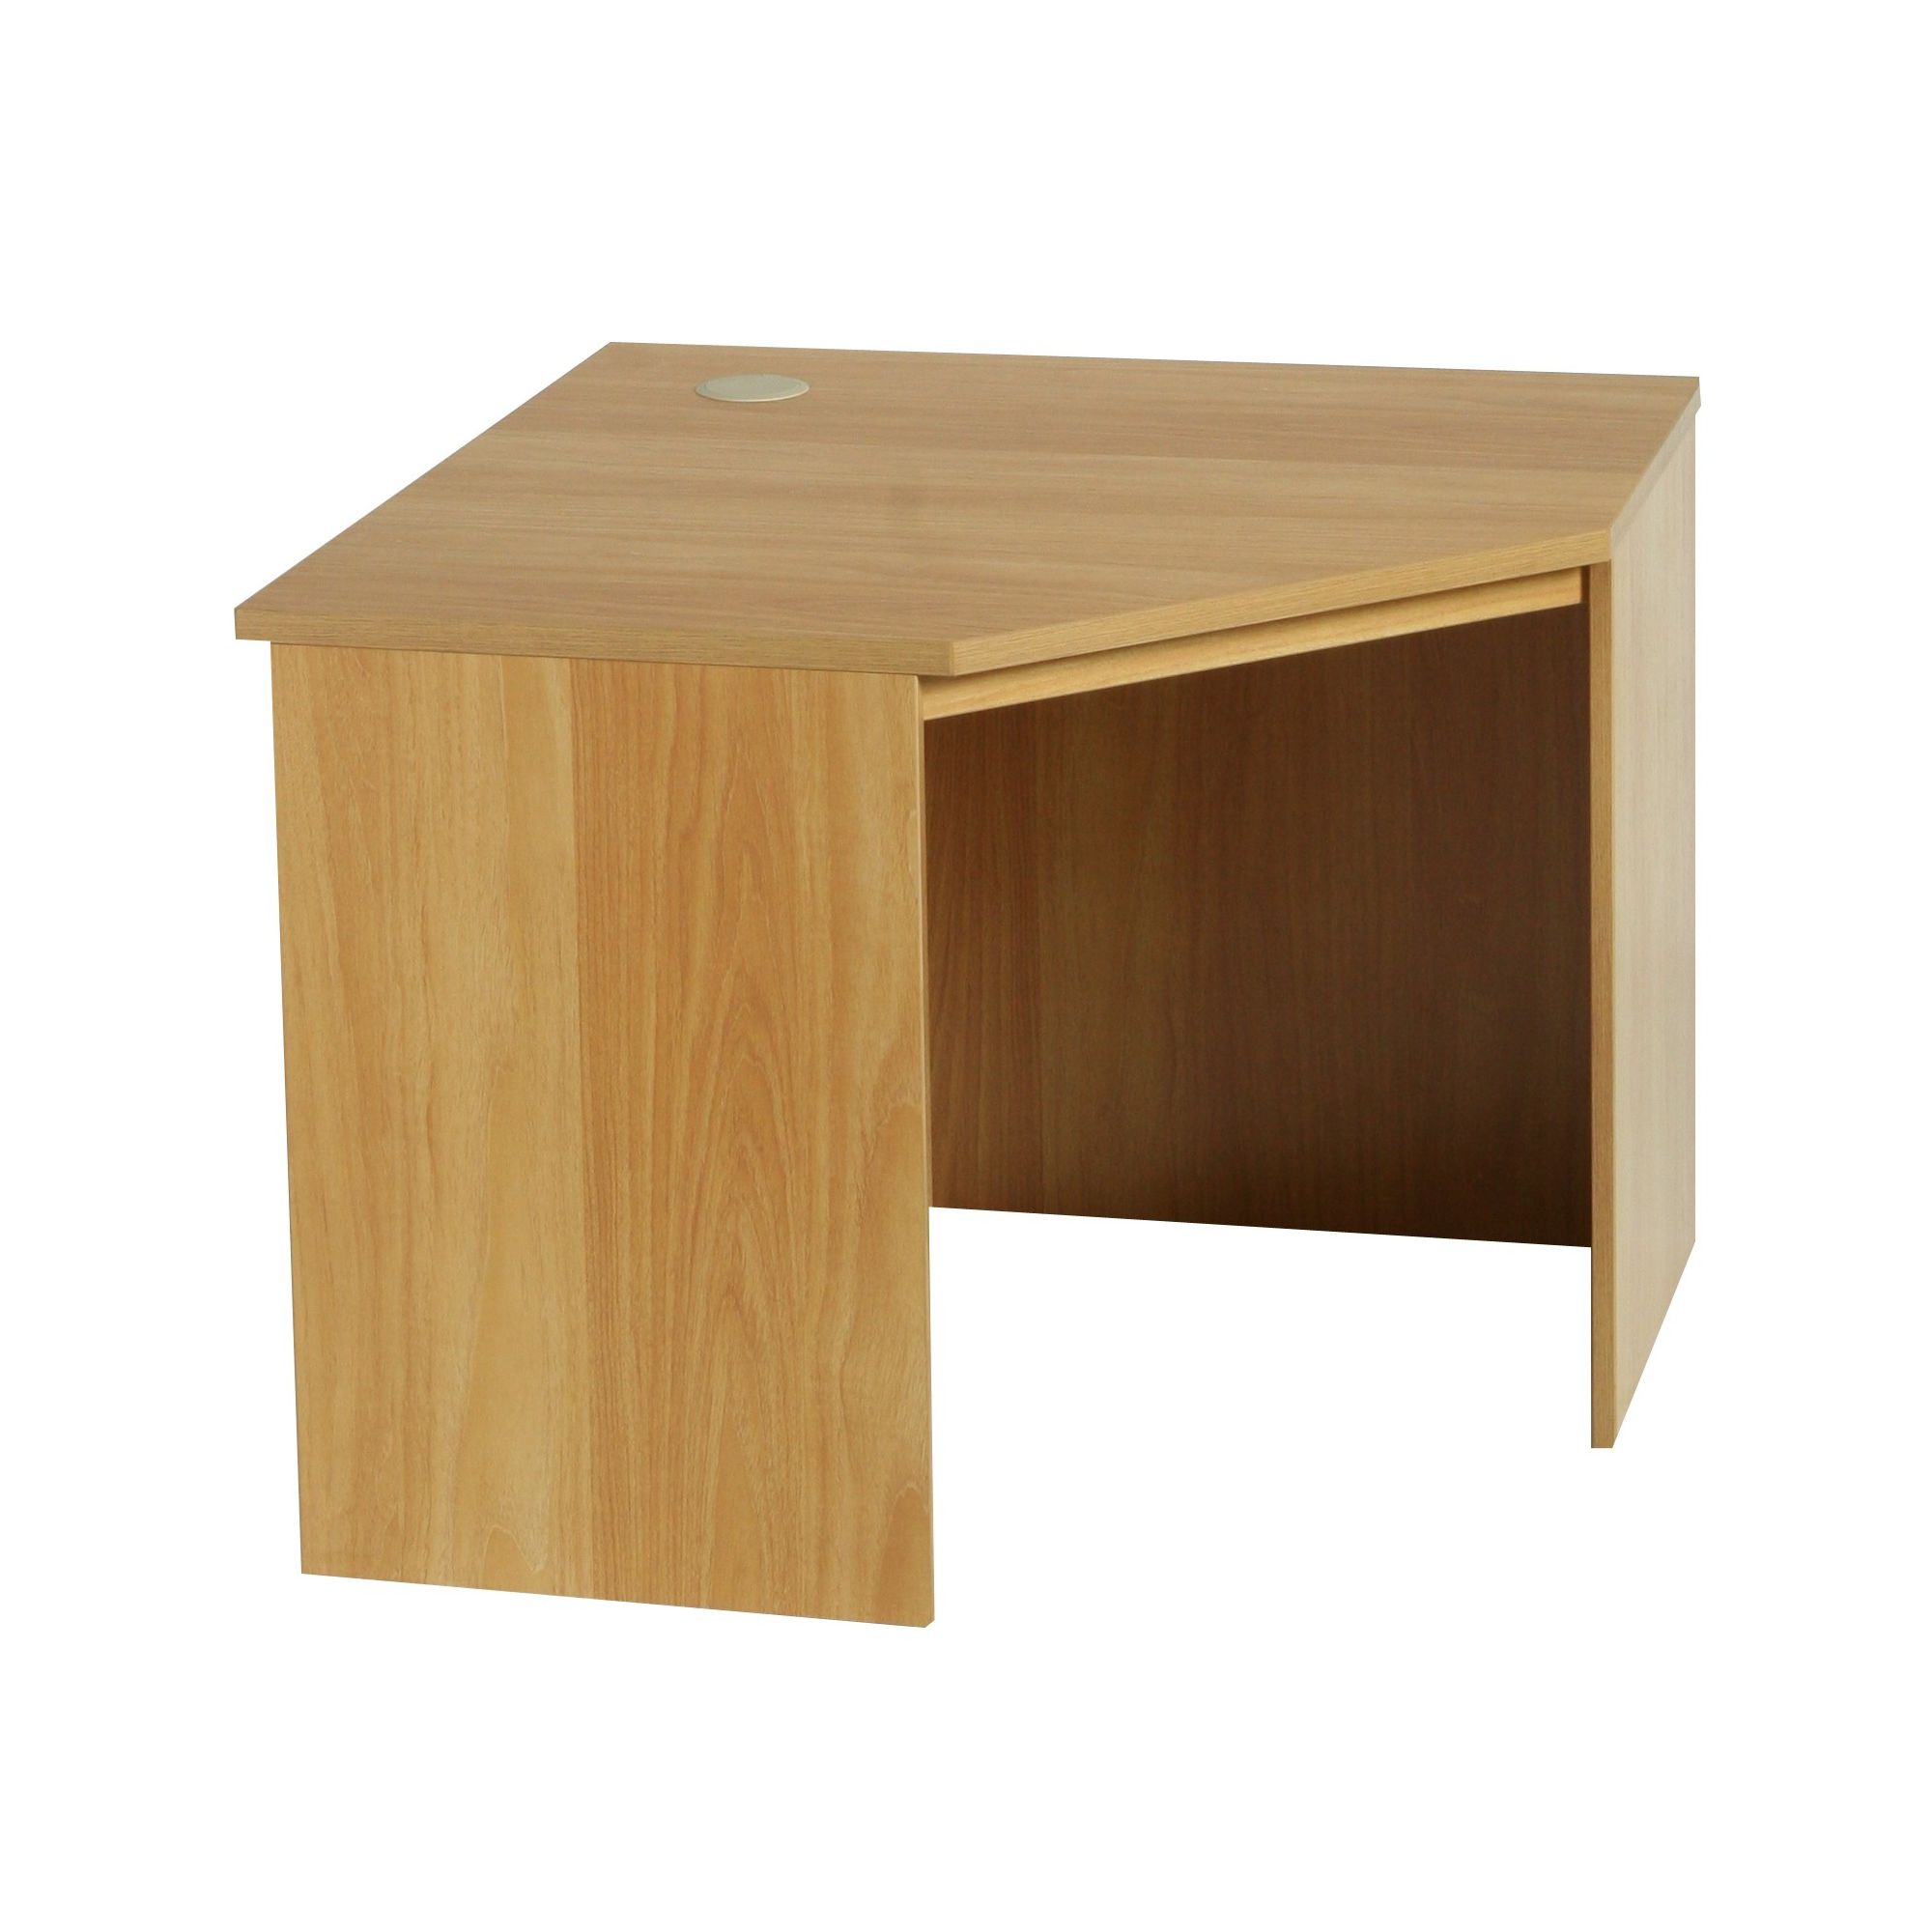 Enduro Home Office Corner Desk / Workstation - Walnut at Tesco Direct